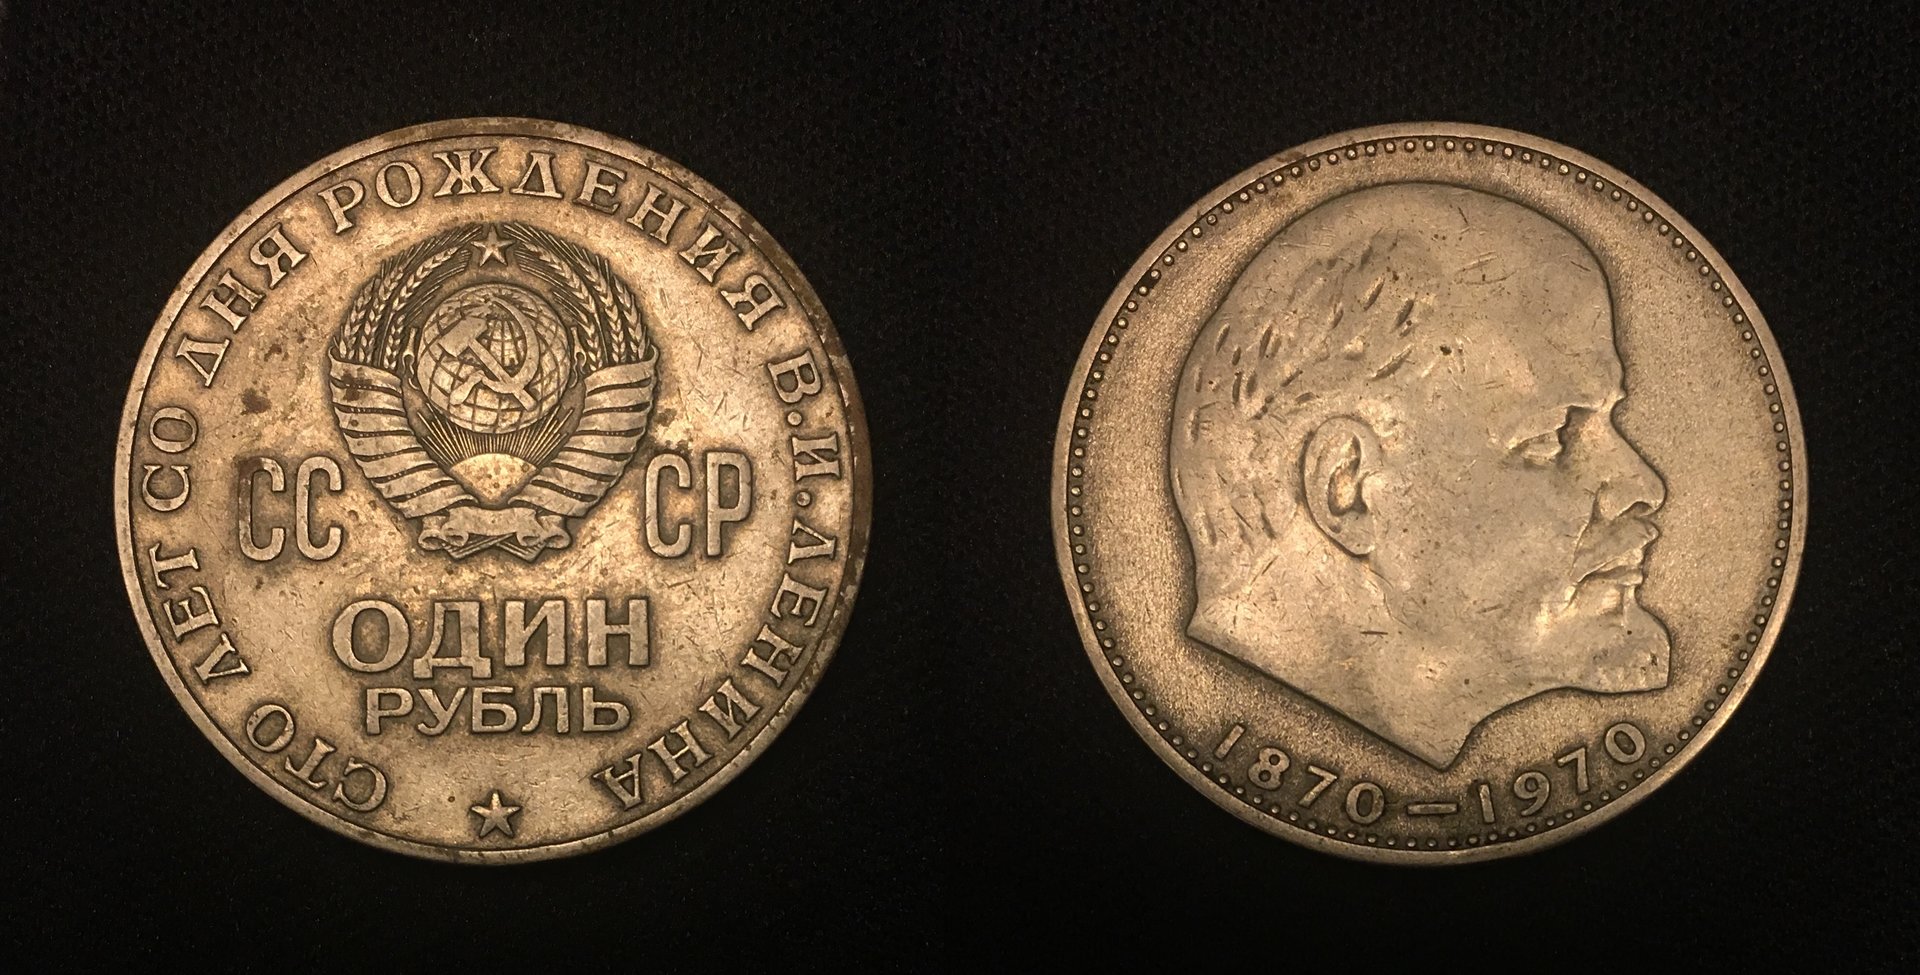 1970 1 Ruble Vladimir Lenin Combined.jpg